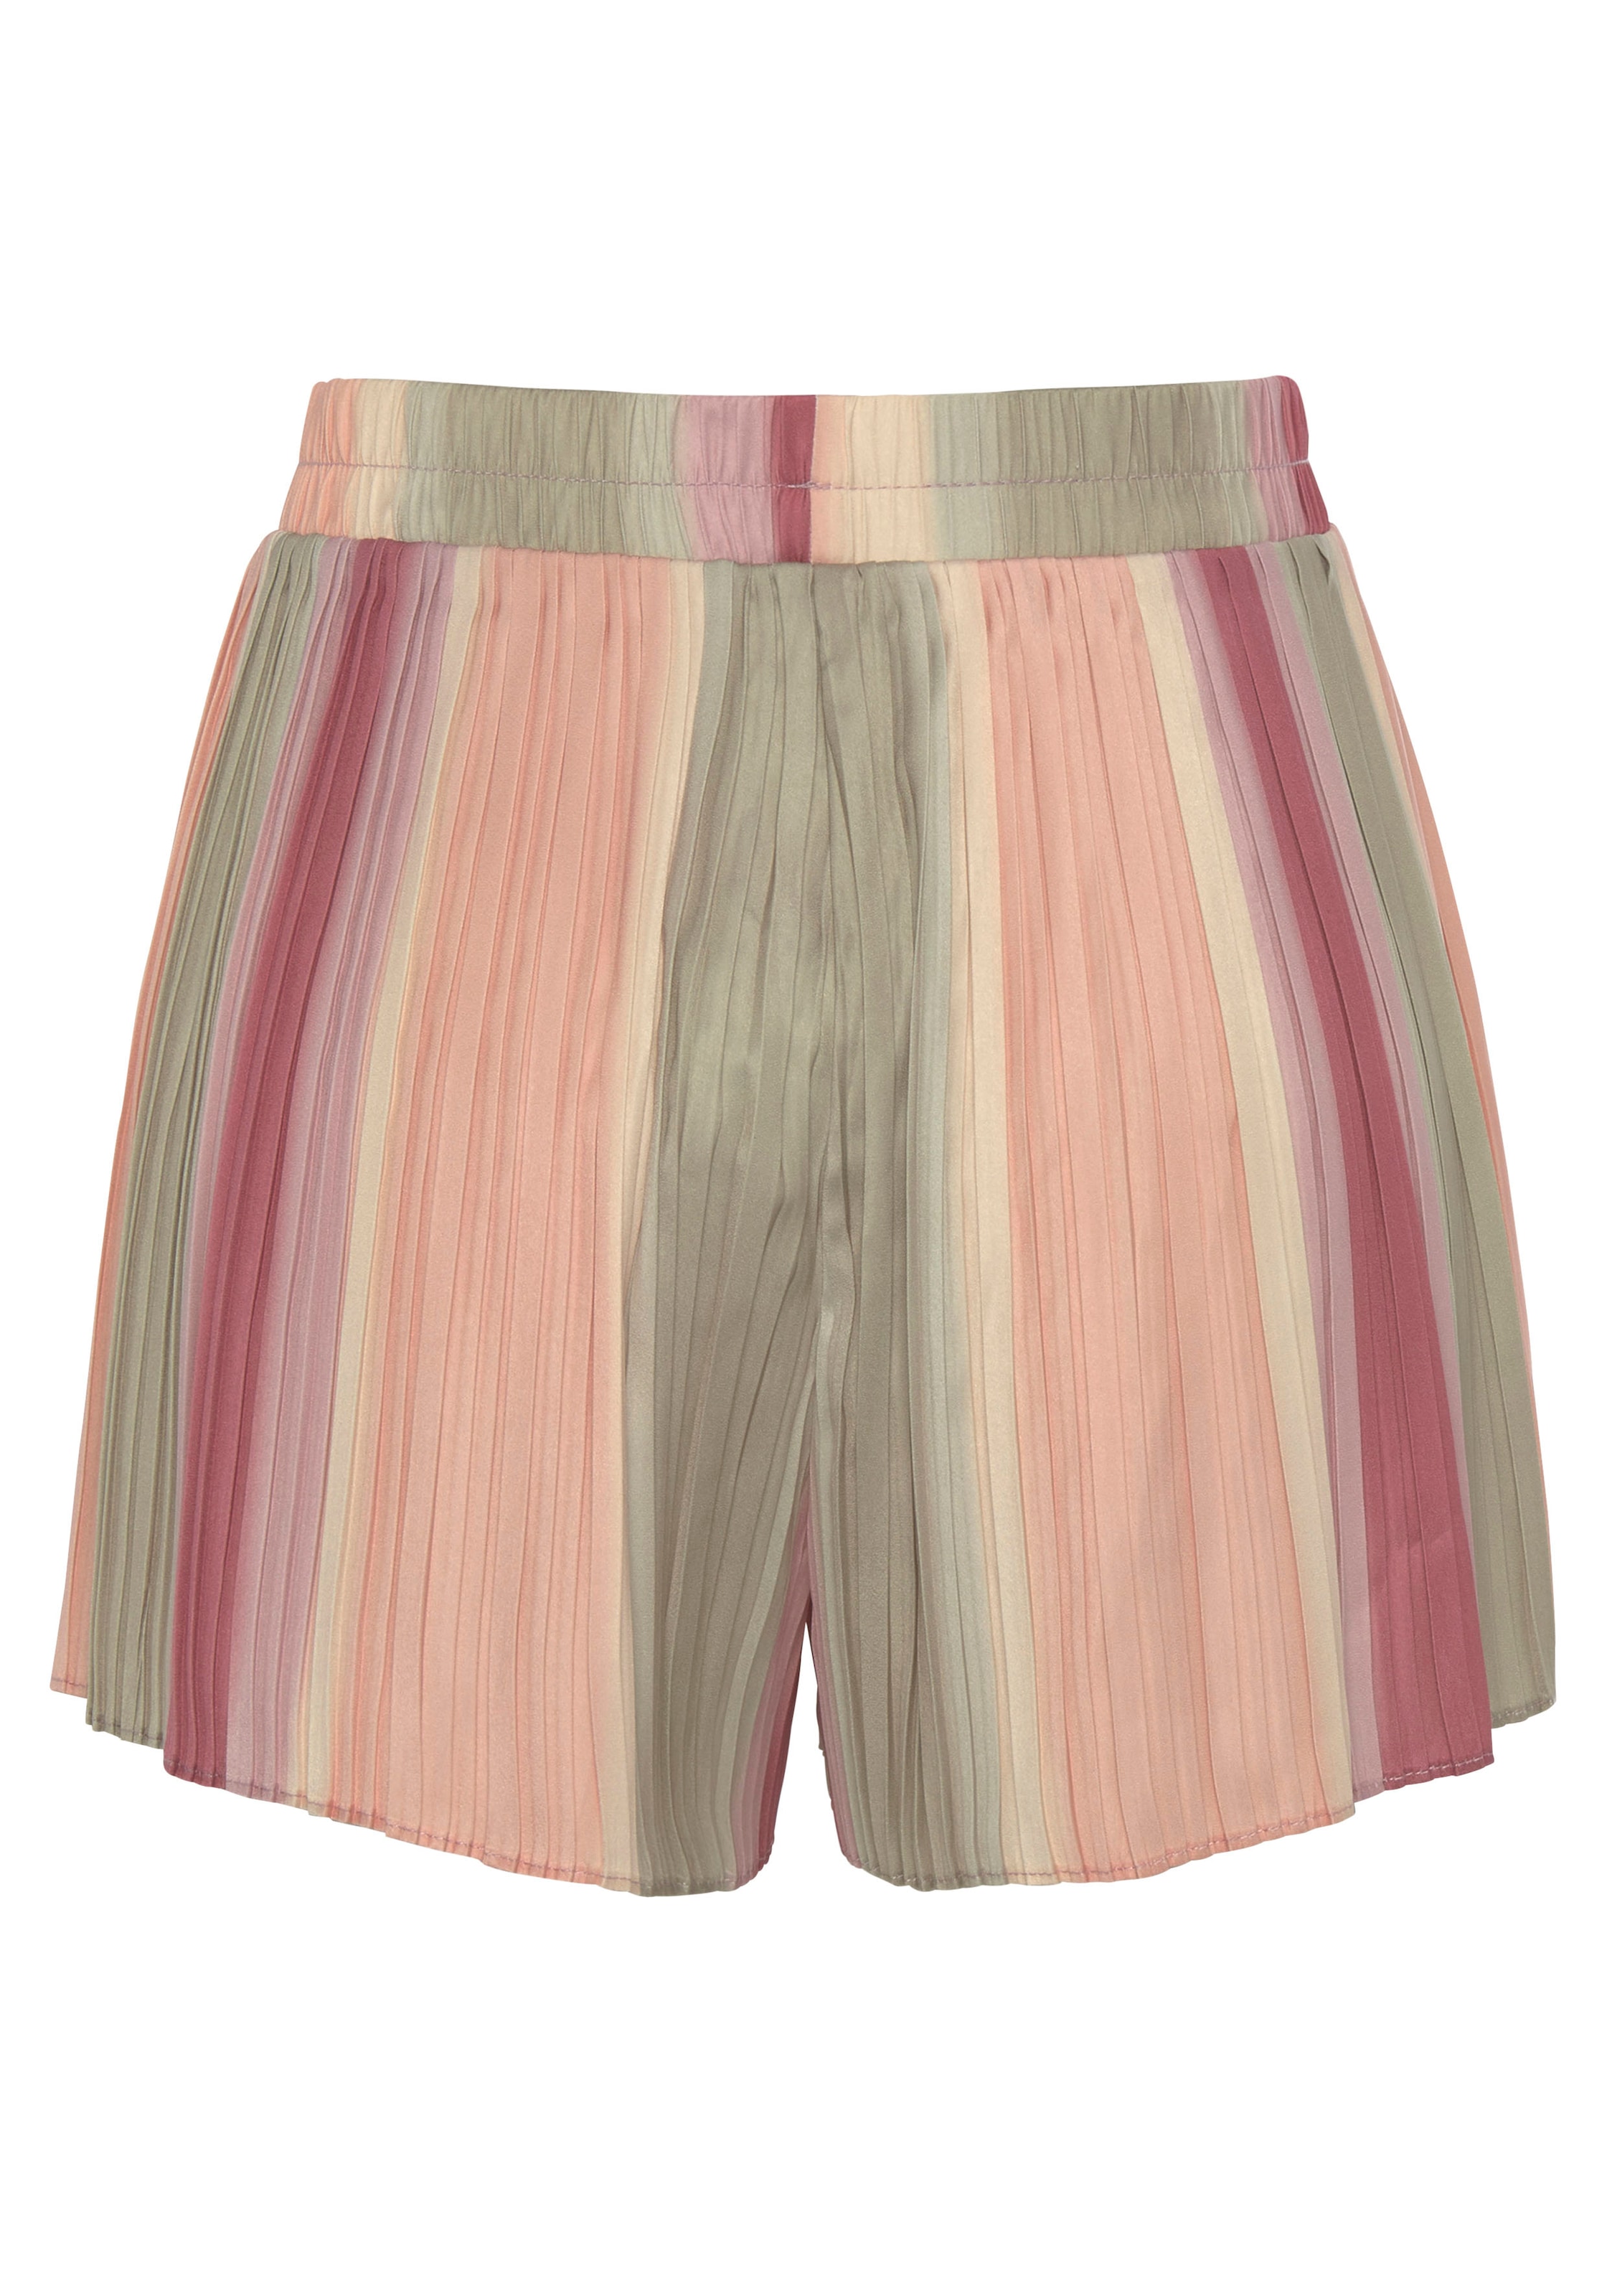 Vivance Shorts, aus Plissee, mit Farbverlauf, leicht glänzend, kurze Hose  online | I'm walking